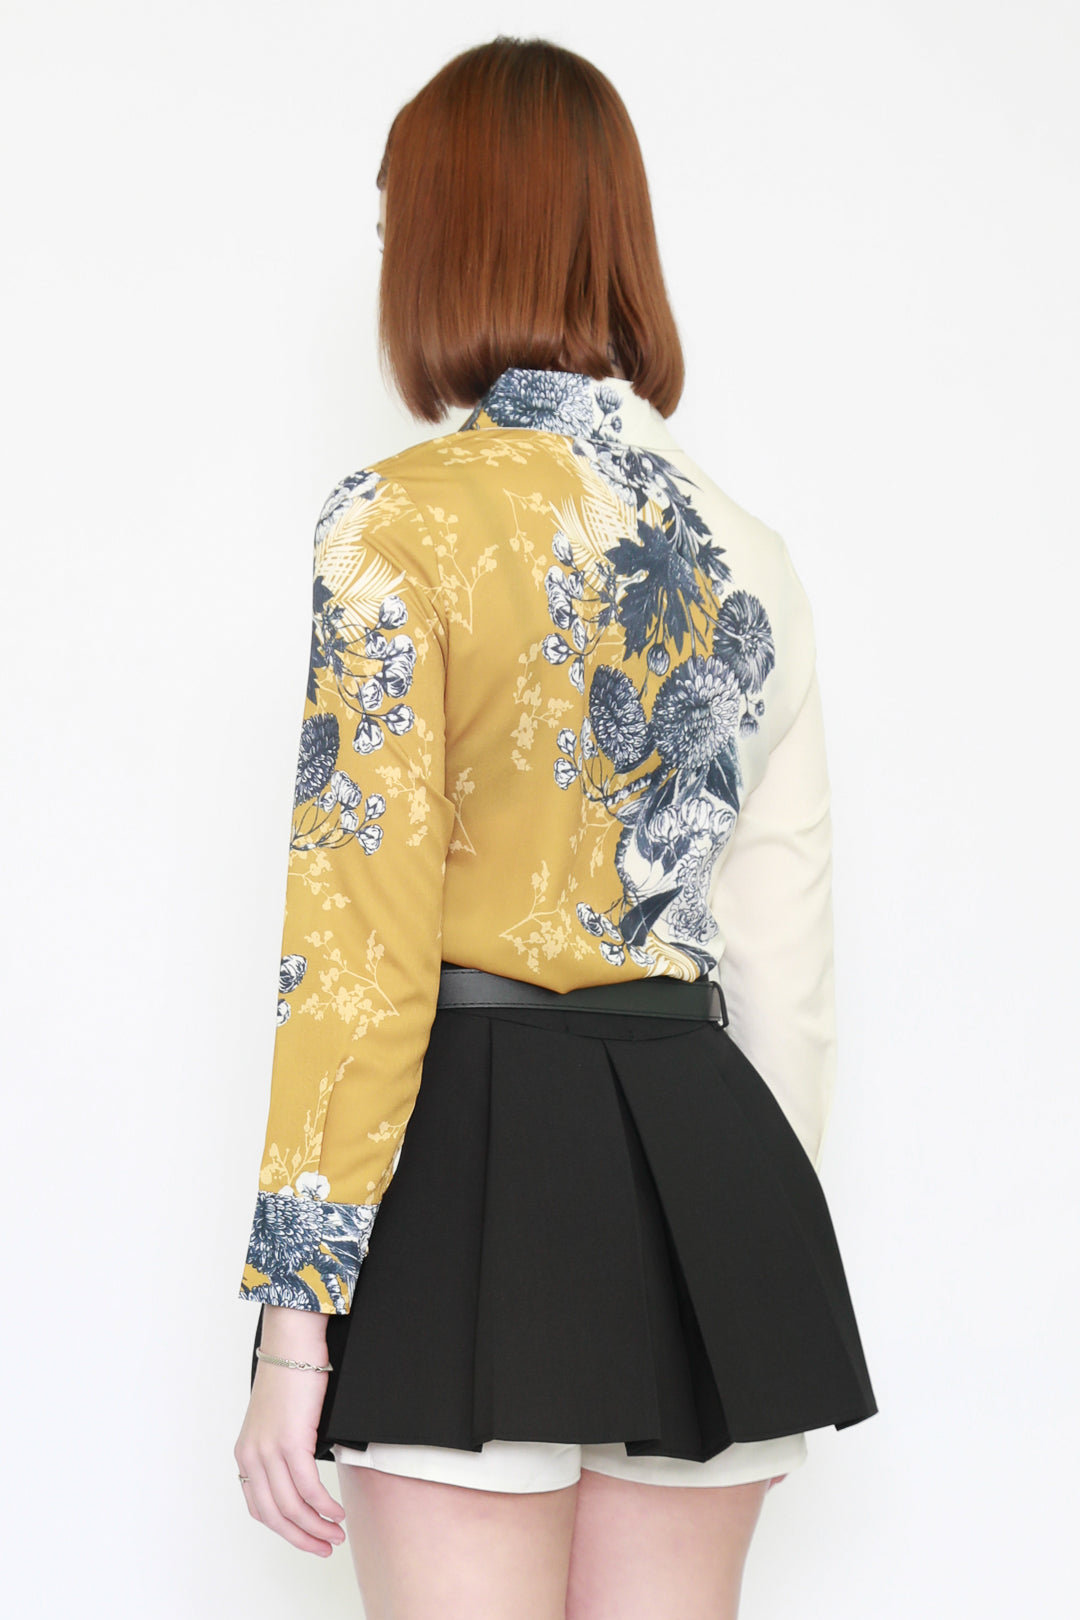 Silk Art Prints Beige Yellow Shirt